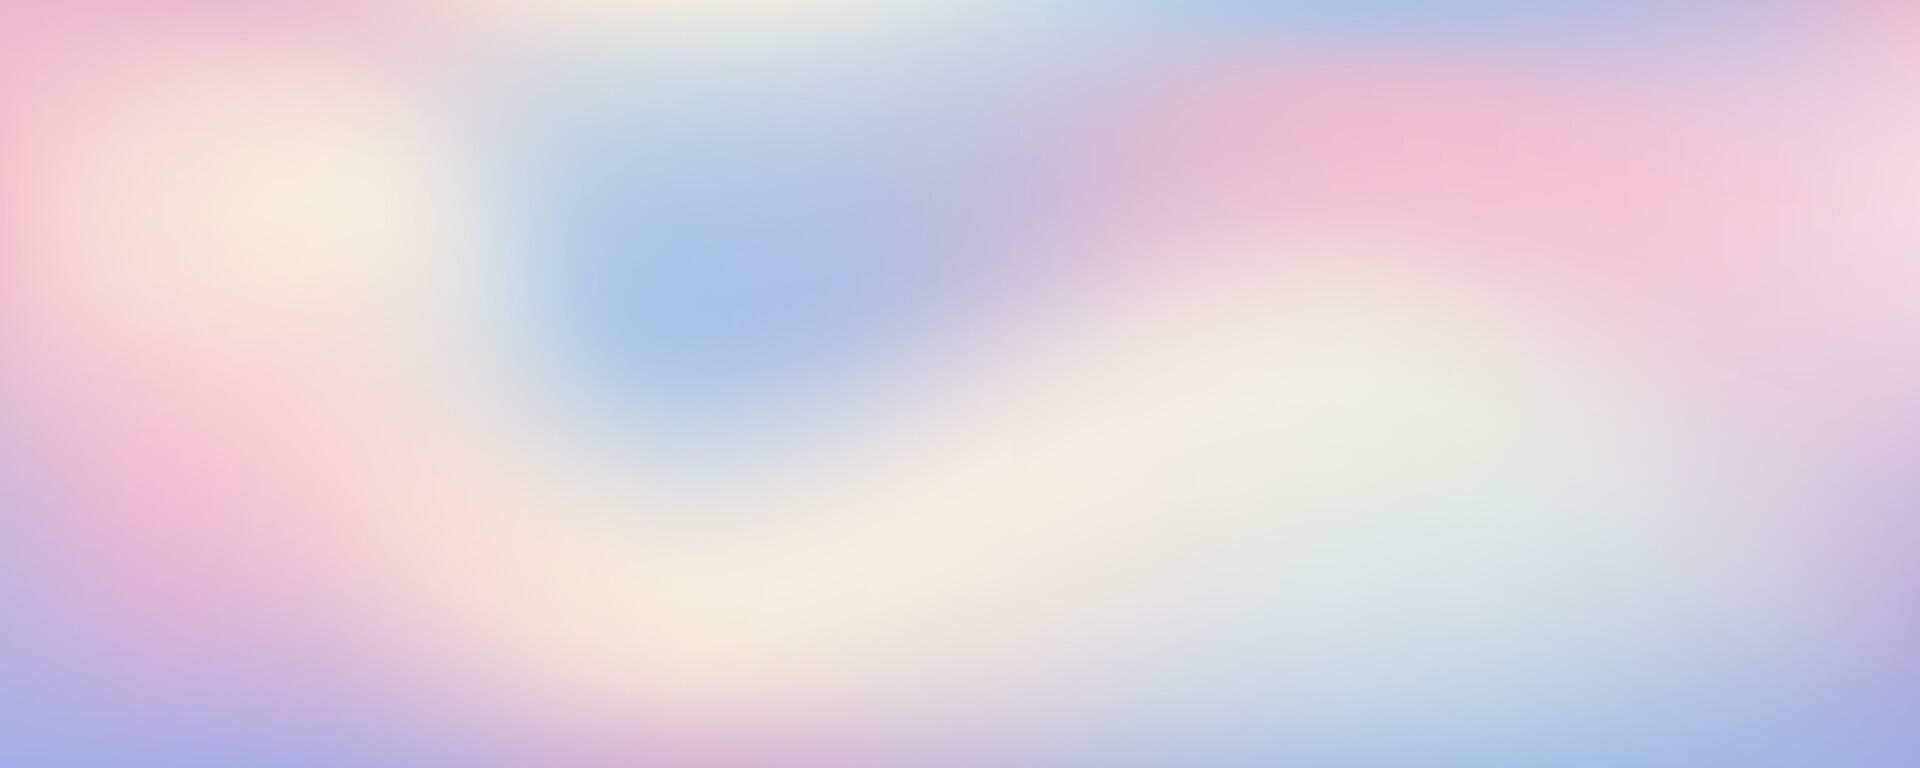 Rosa Himmel Hintergrund. Pastell- abstrakt lila Gradient Sonnenuntergang. Aquarell Winter kalt wellig Hintergrund. Vektor verschwommen Landschaft.